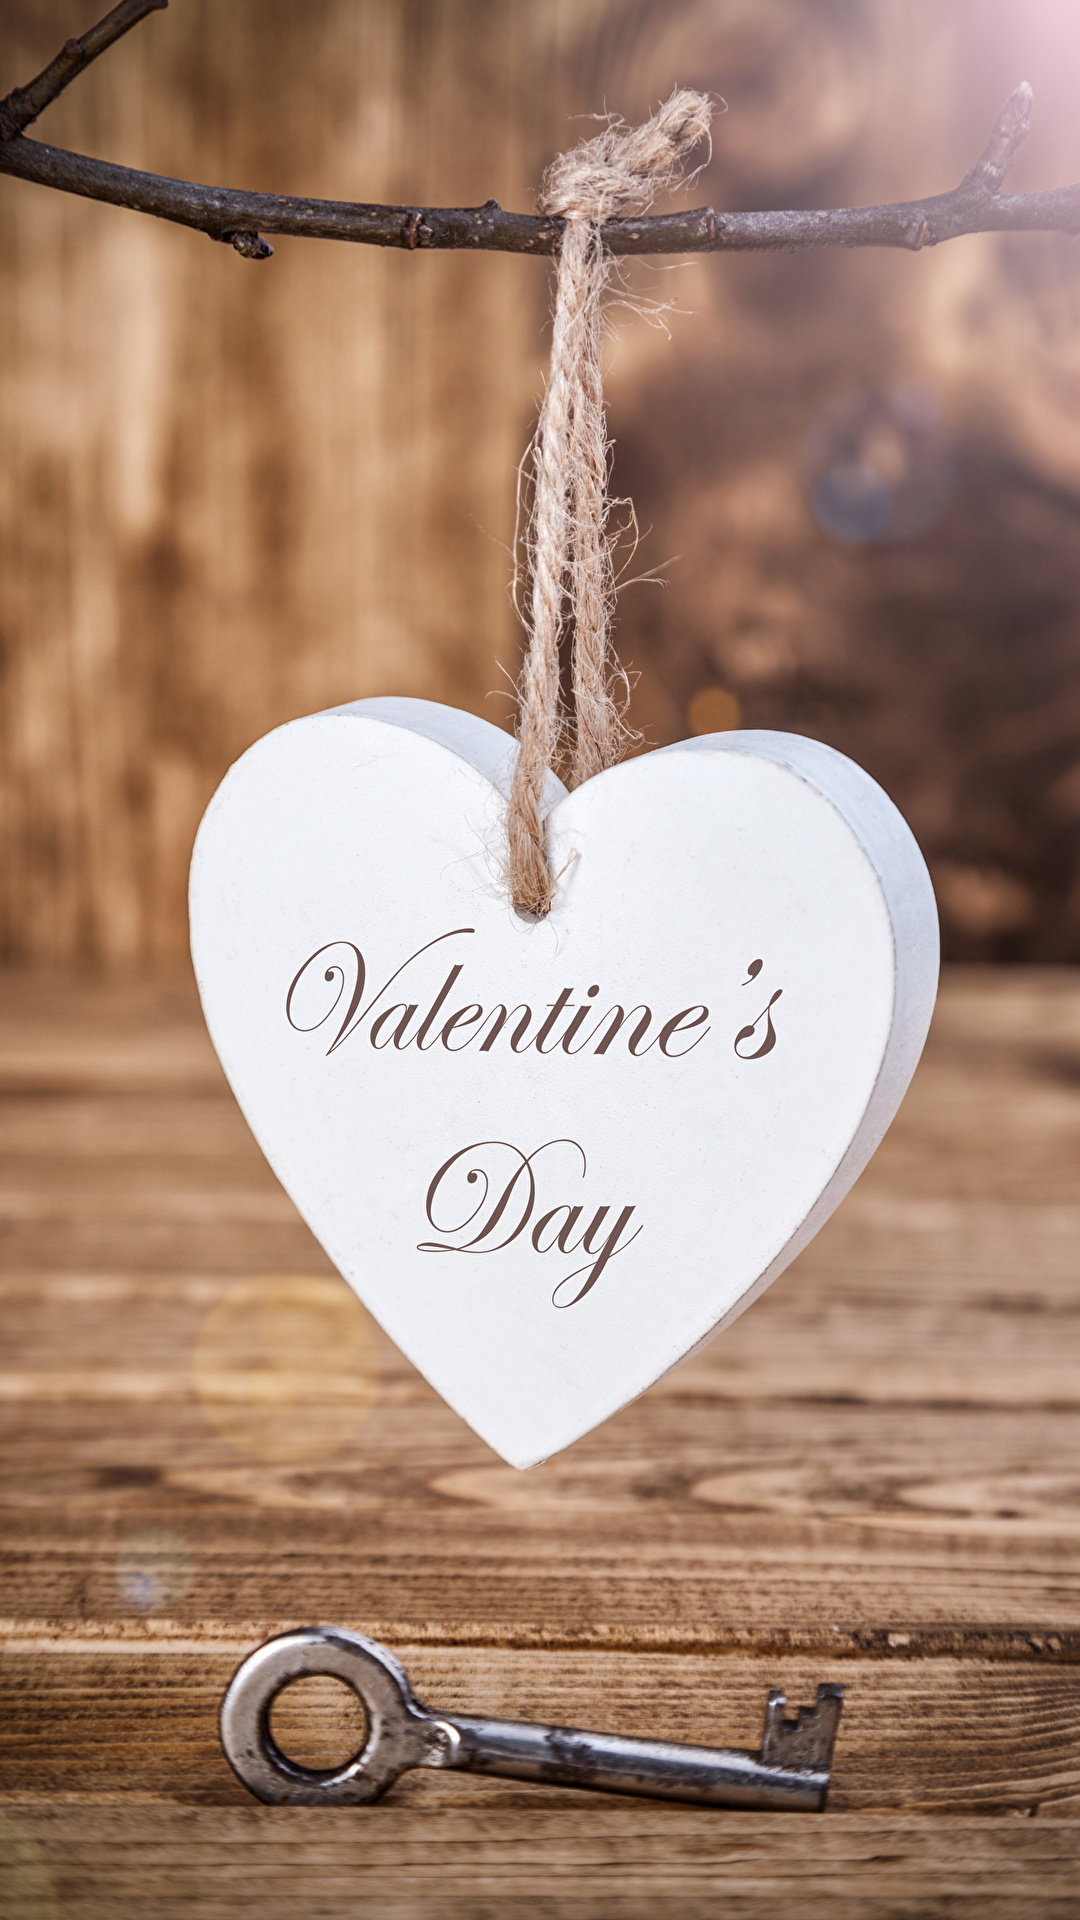 Фото День святого Валентина Английский сердечко Замковый ключ Доски 1080x1920 для мобильного телефона День всех влюблённых английская инглийские серце Сердце сердца ключа ключом